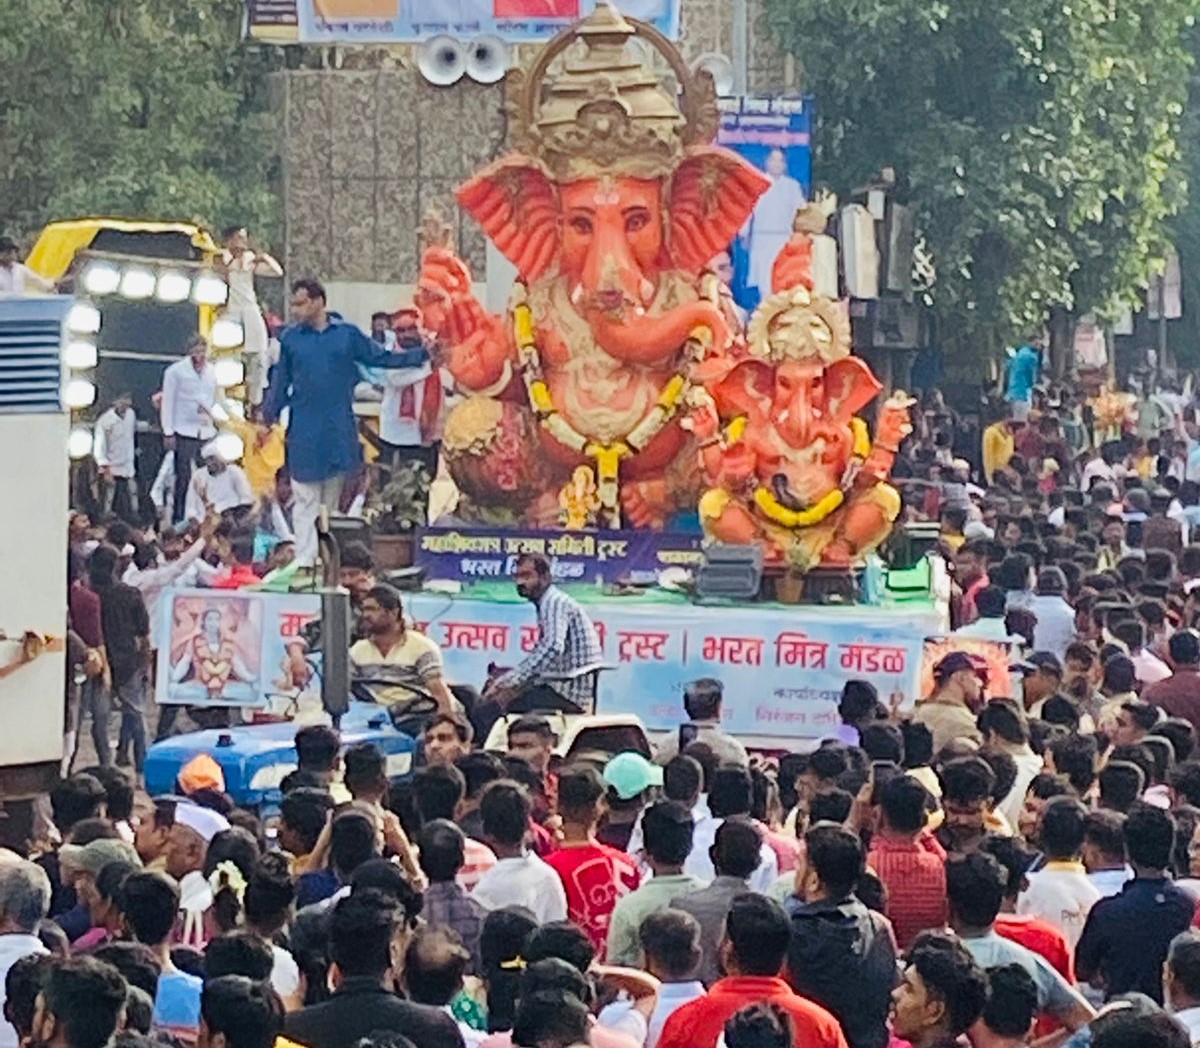 Ganesha idols Immersion | हौद आणि टाक्यात 3 लाखाहून अधिक गणेश मूर्तीचे विसर्जन  | 4 लाख किलोहून अधिक निर्माल्य जमा 